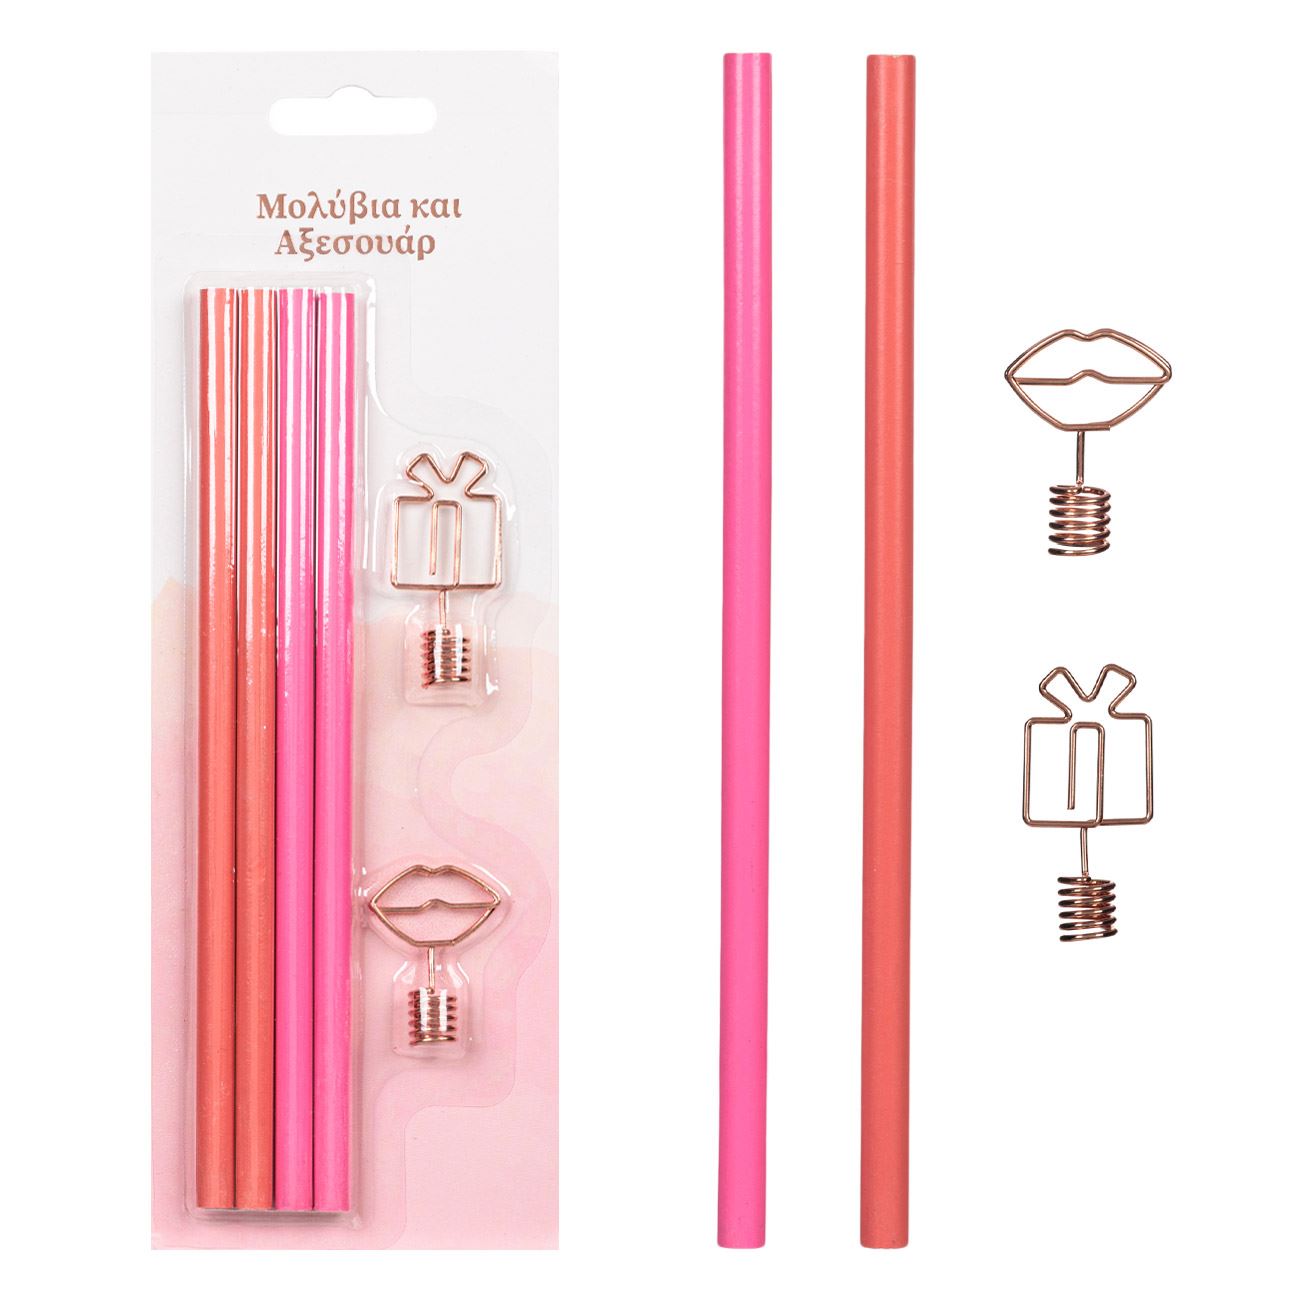 Rózsaszín ceruzák fém végekkel - 6 db